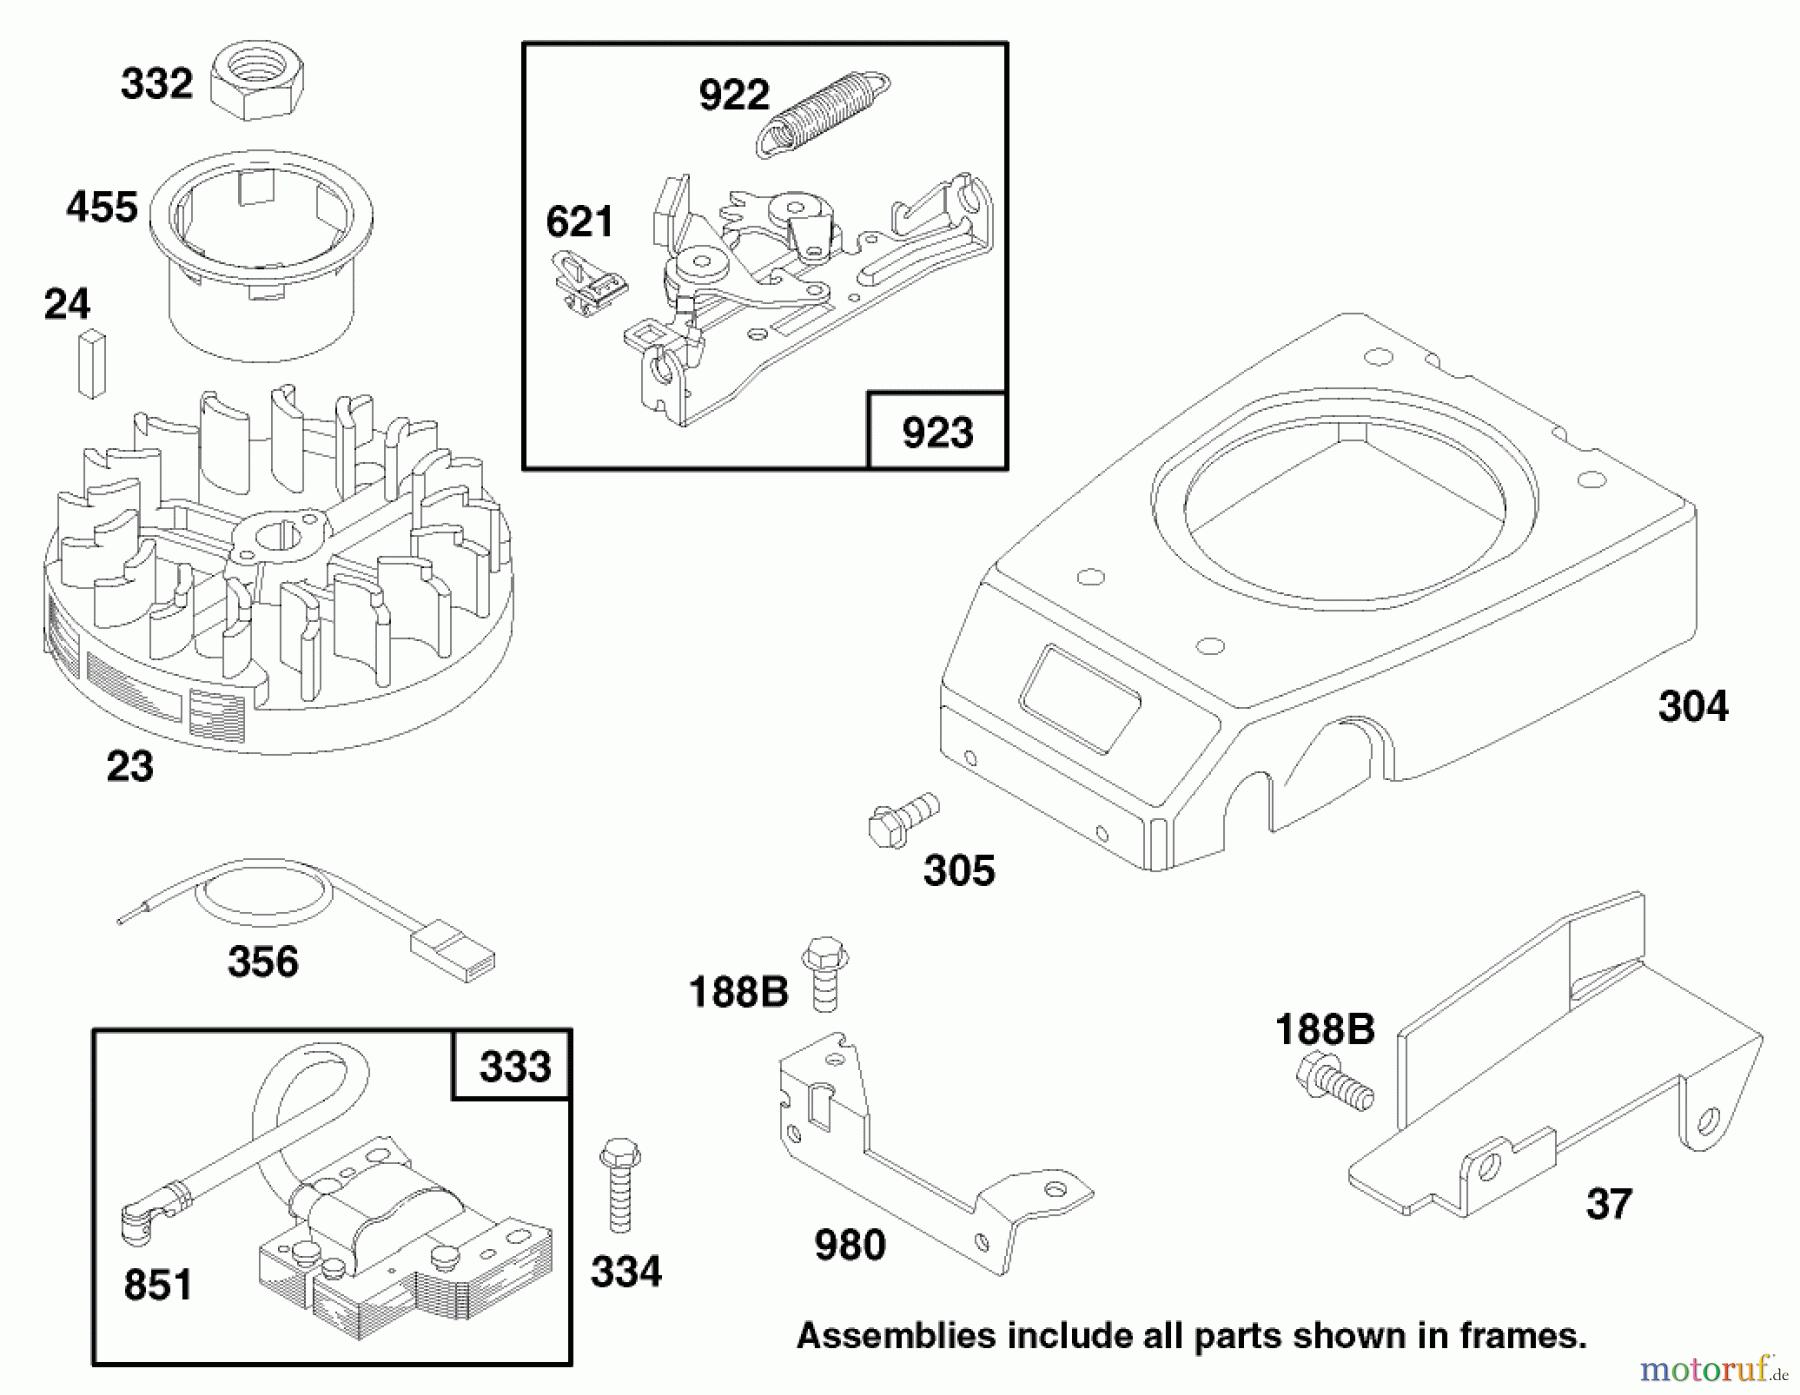  Toro Neu Mowers, Walk-Behind Seite 1 20464 - Toro Super Recycler Lawnmower, 1997 (7900001-7999999) ENGINE GTS 150 #6